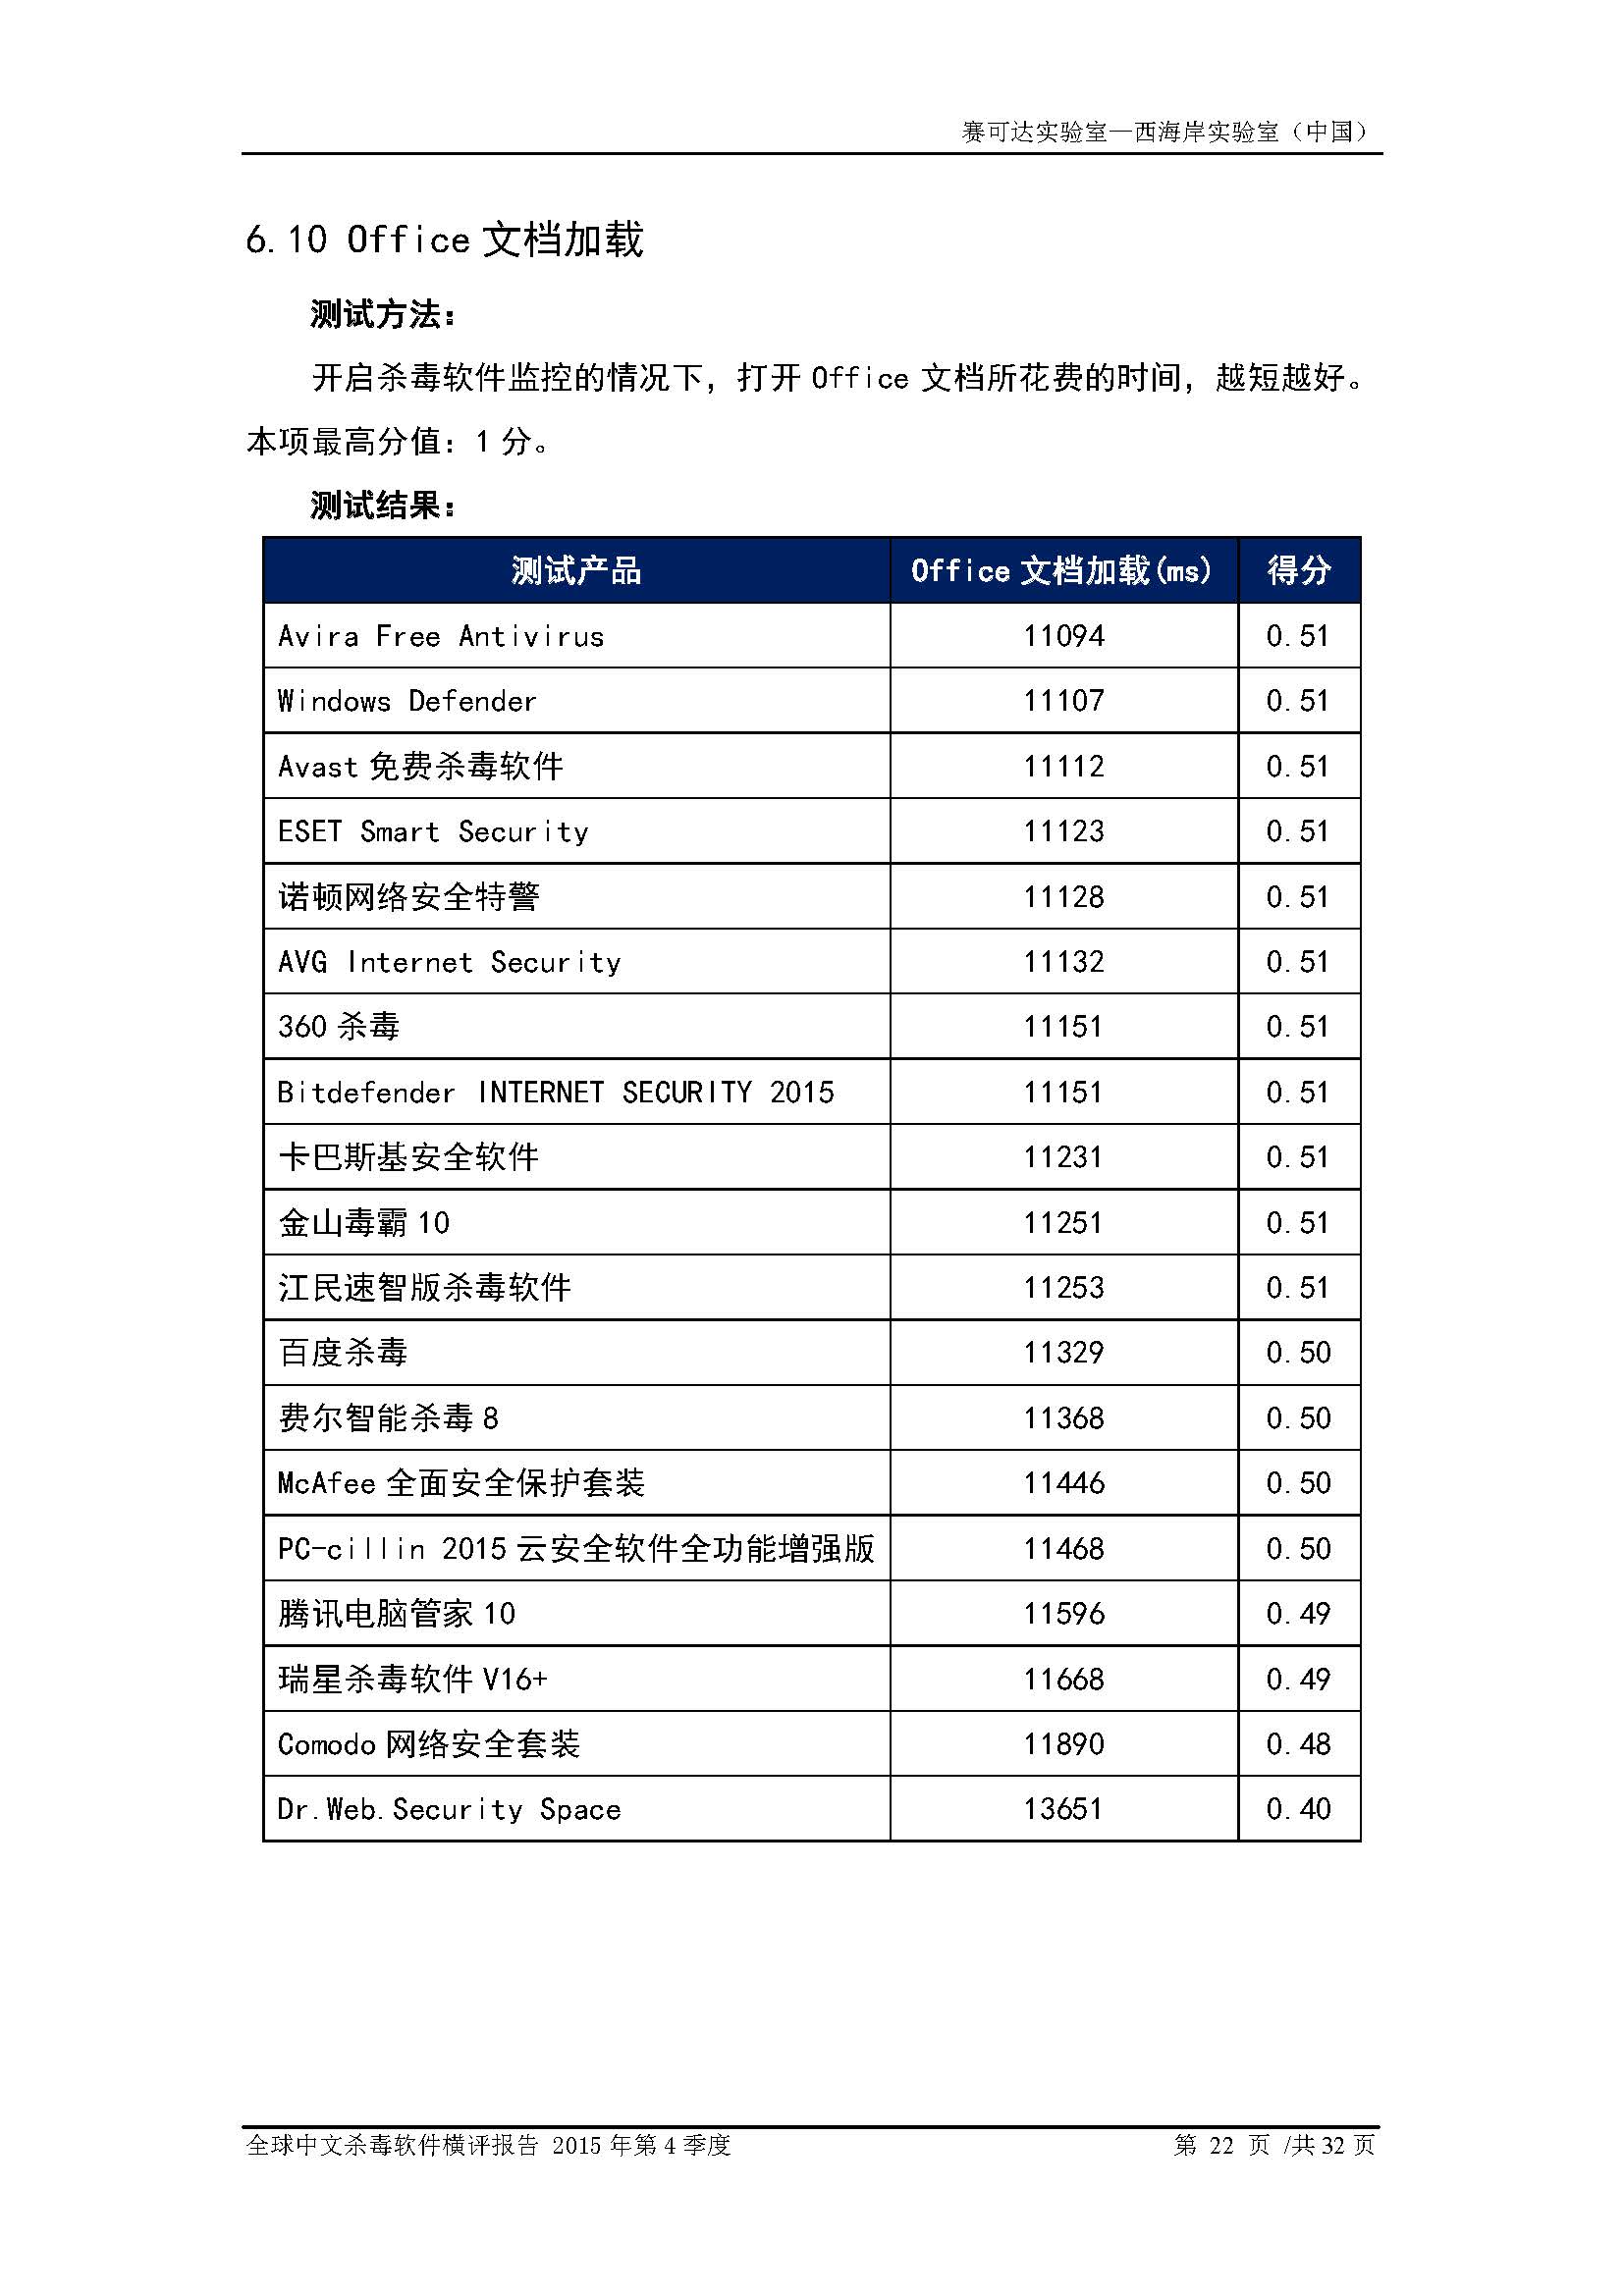 中文PC杀毒软件横评测试报告- Windows 8.1【中文版】.pdf (_Page_24.jpg